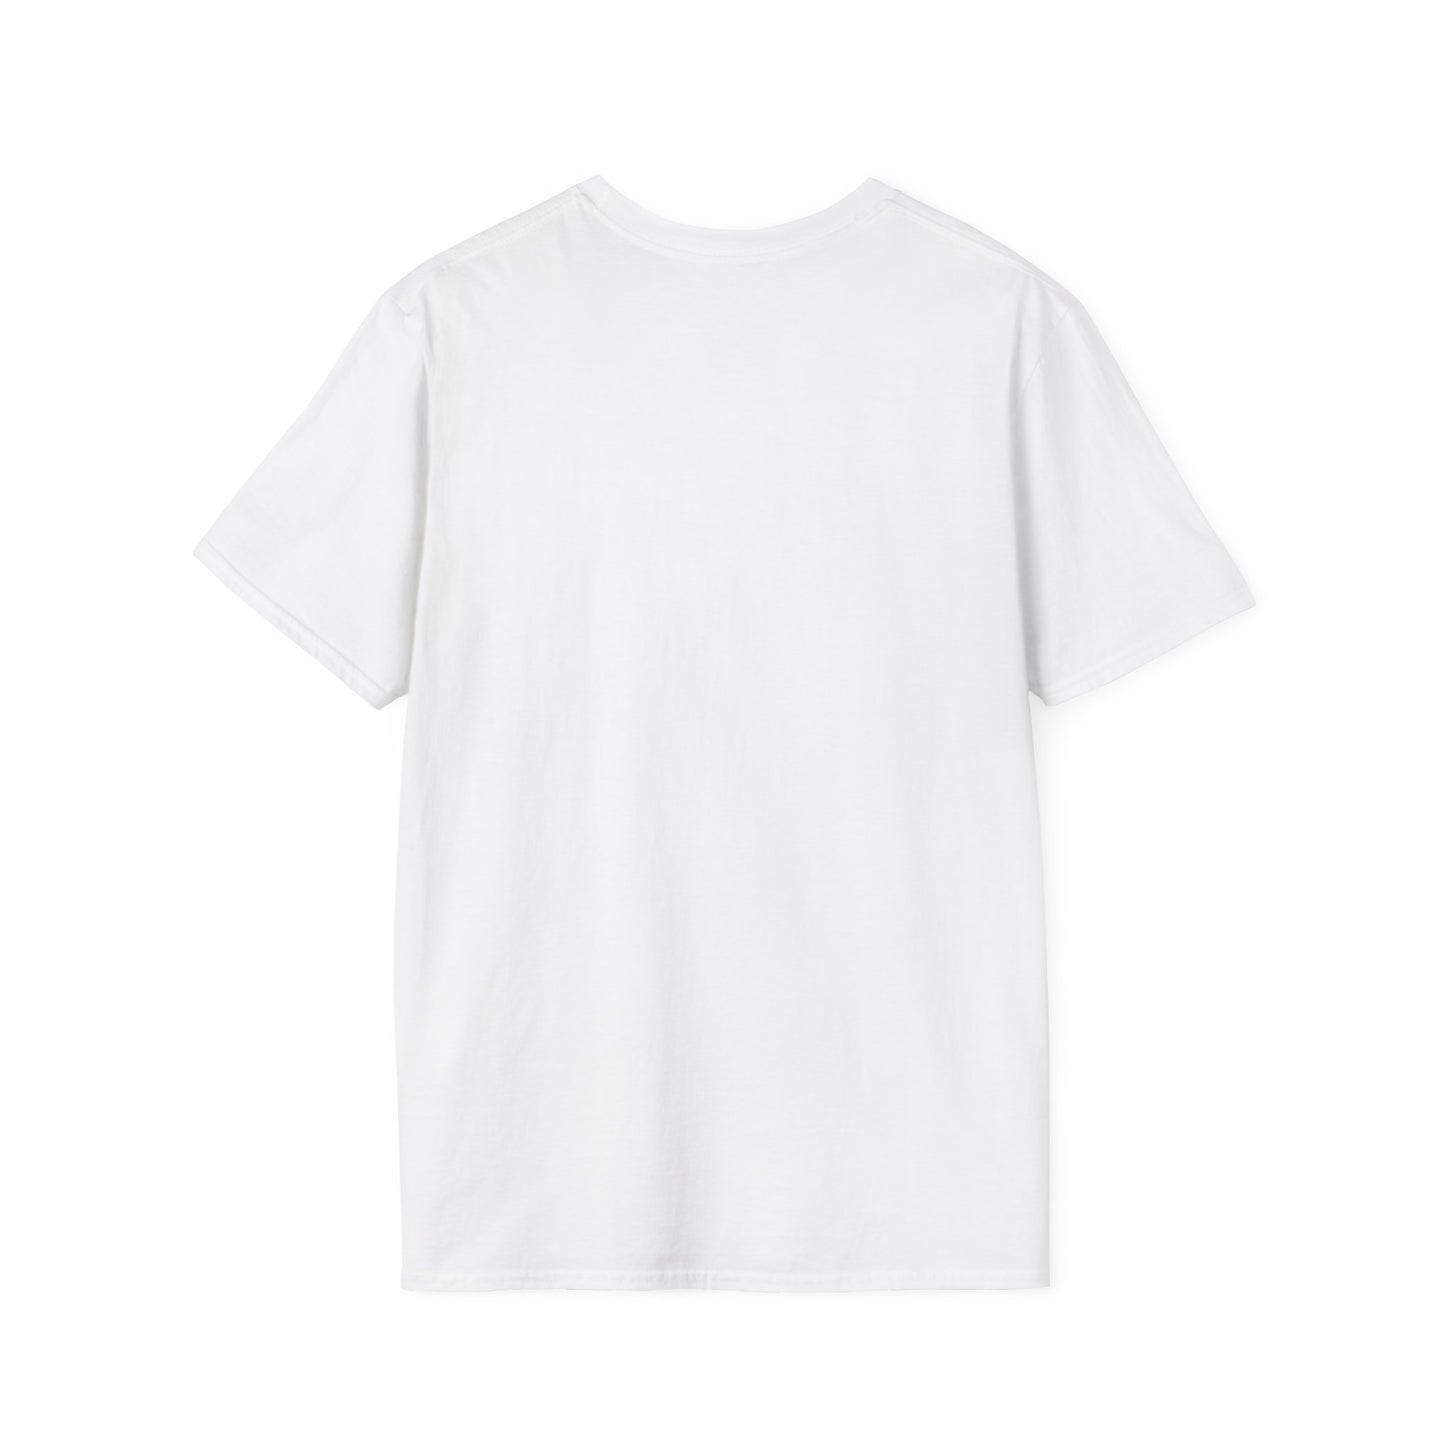 TG-1 Unisex Softstyle T-Shirt